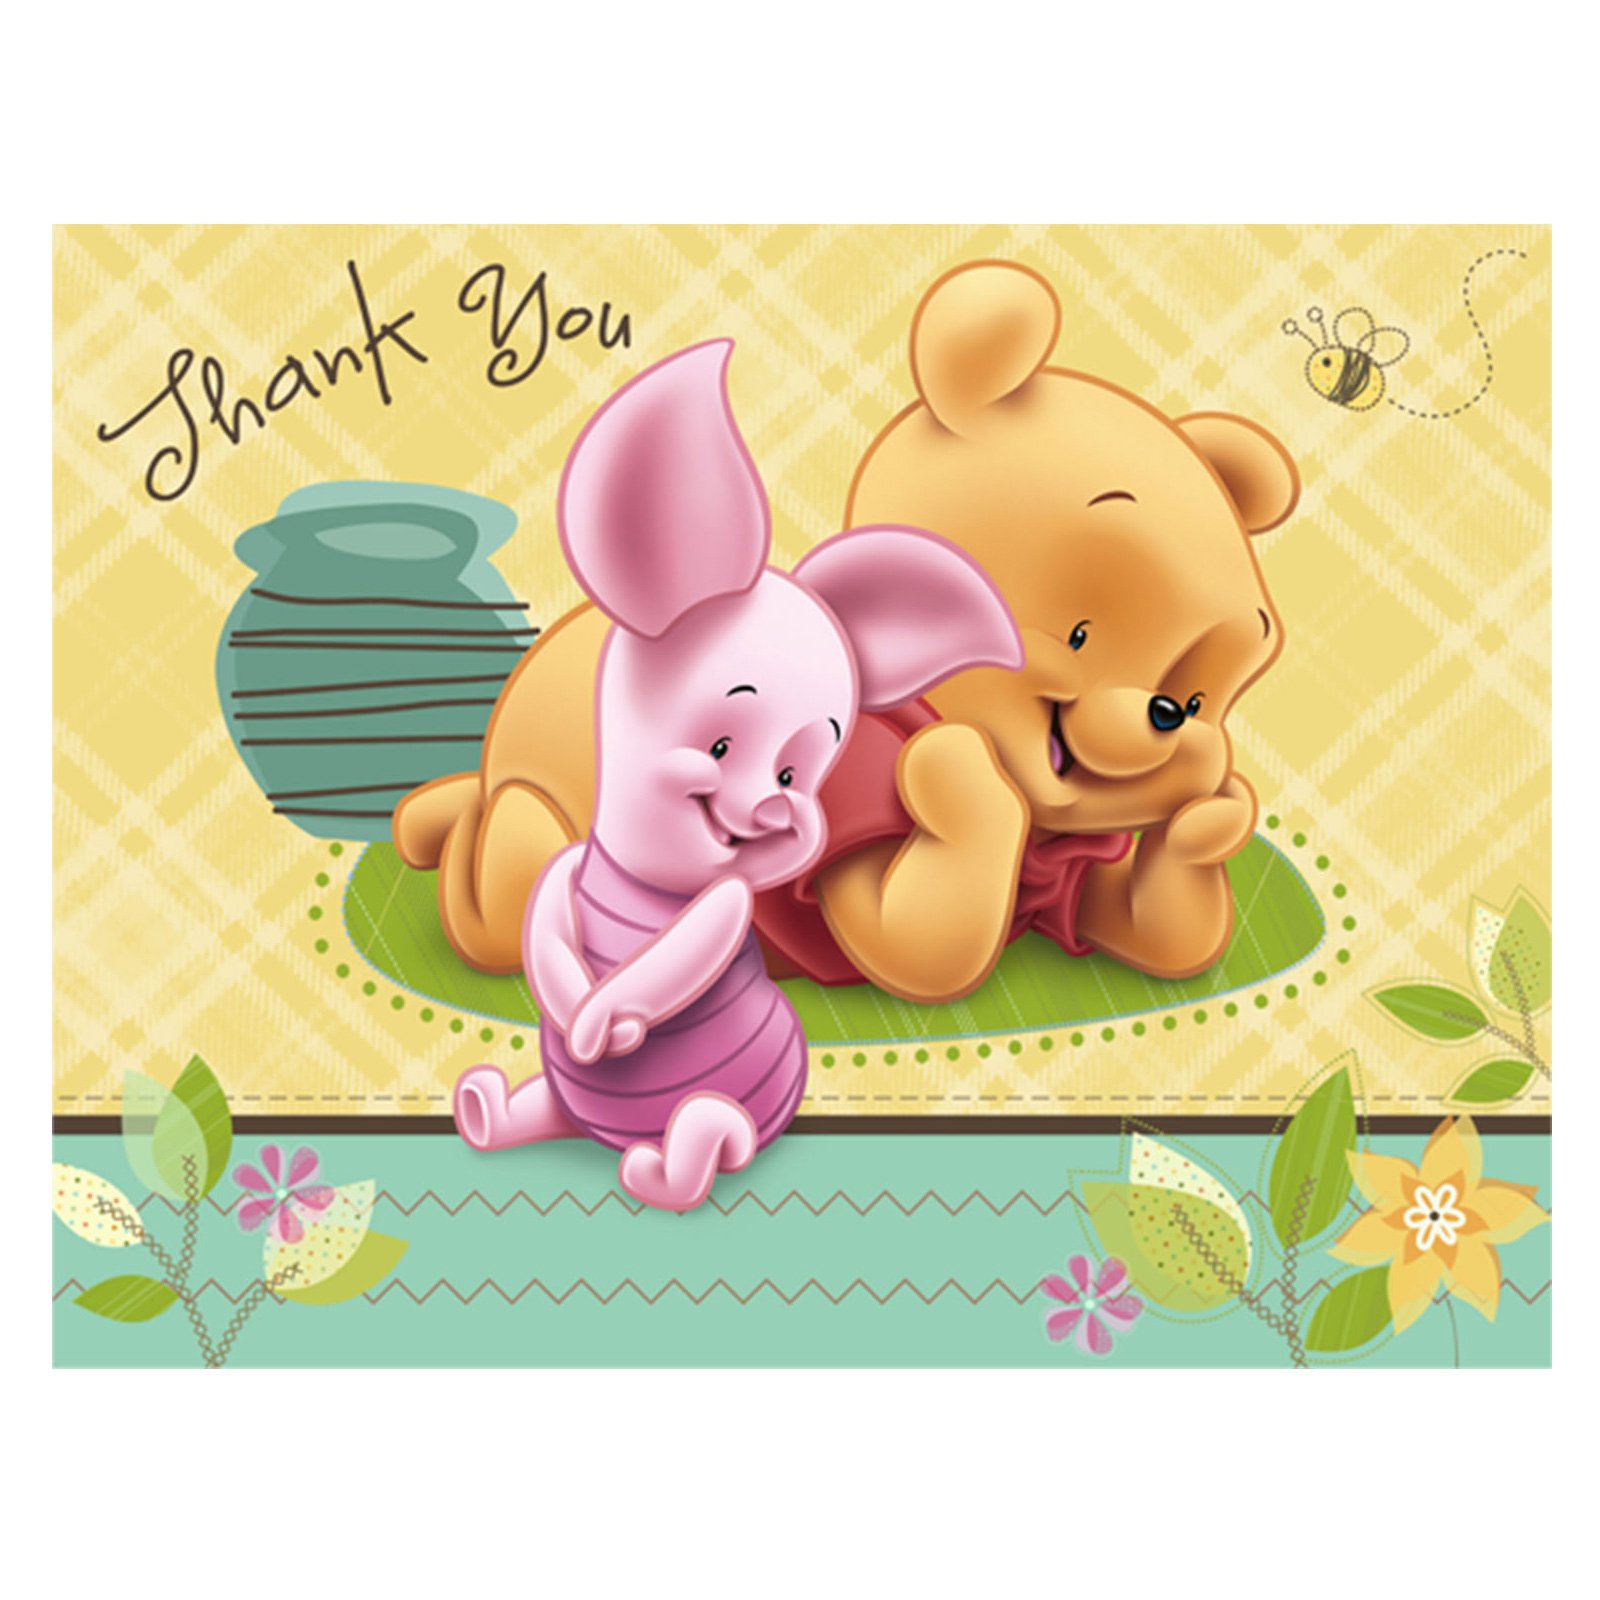 Baby Pooh Image Bear Wallpaper HD And